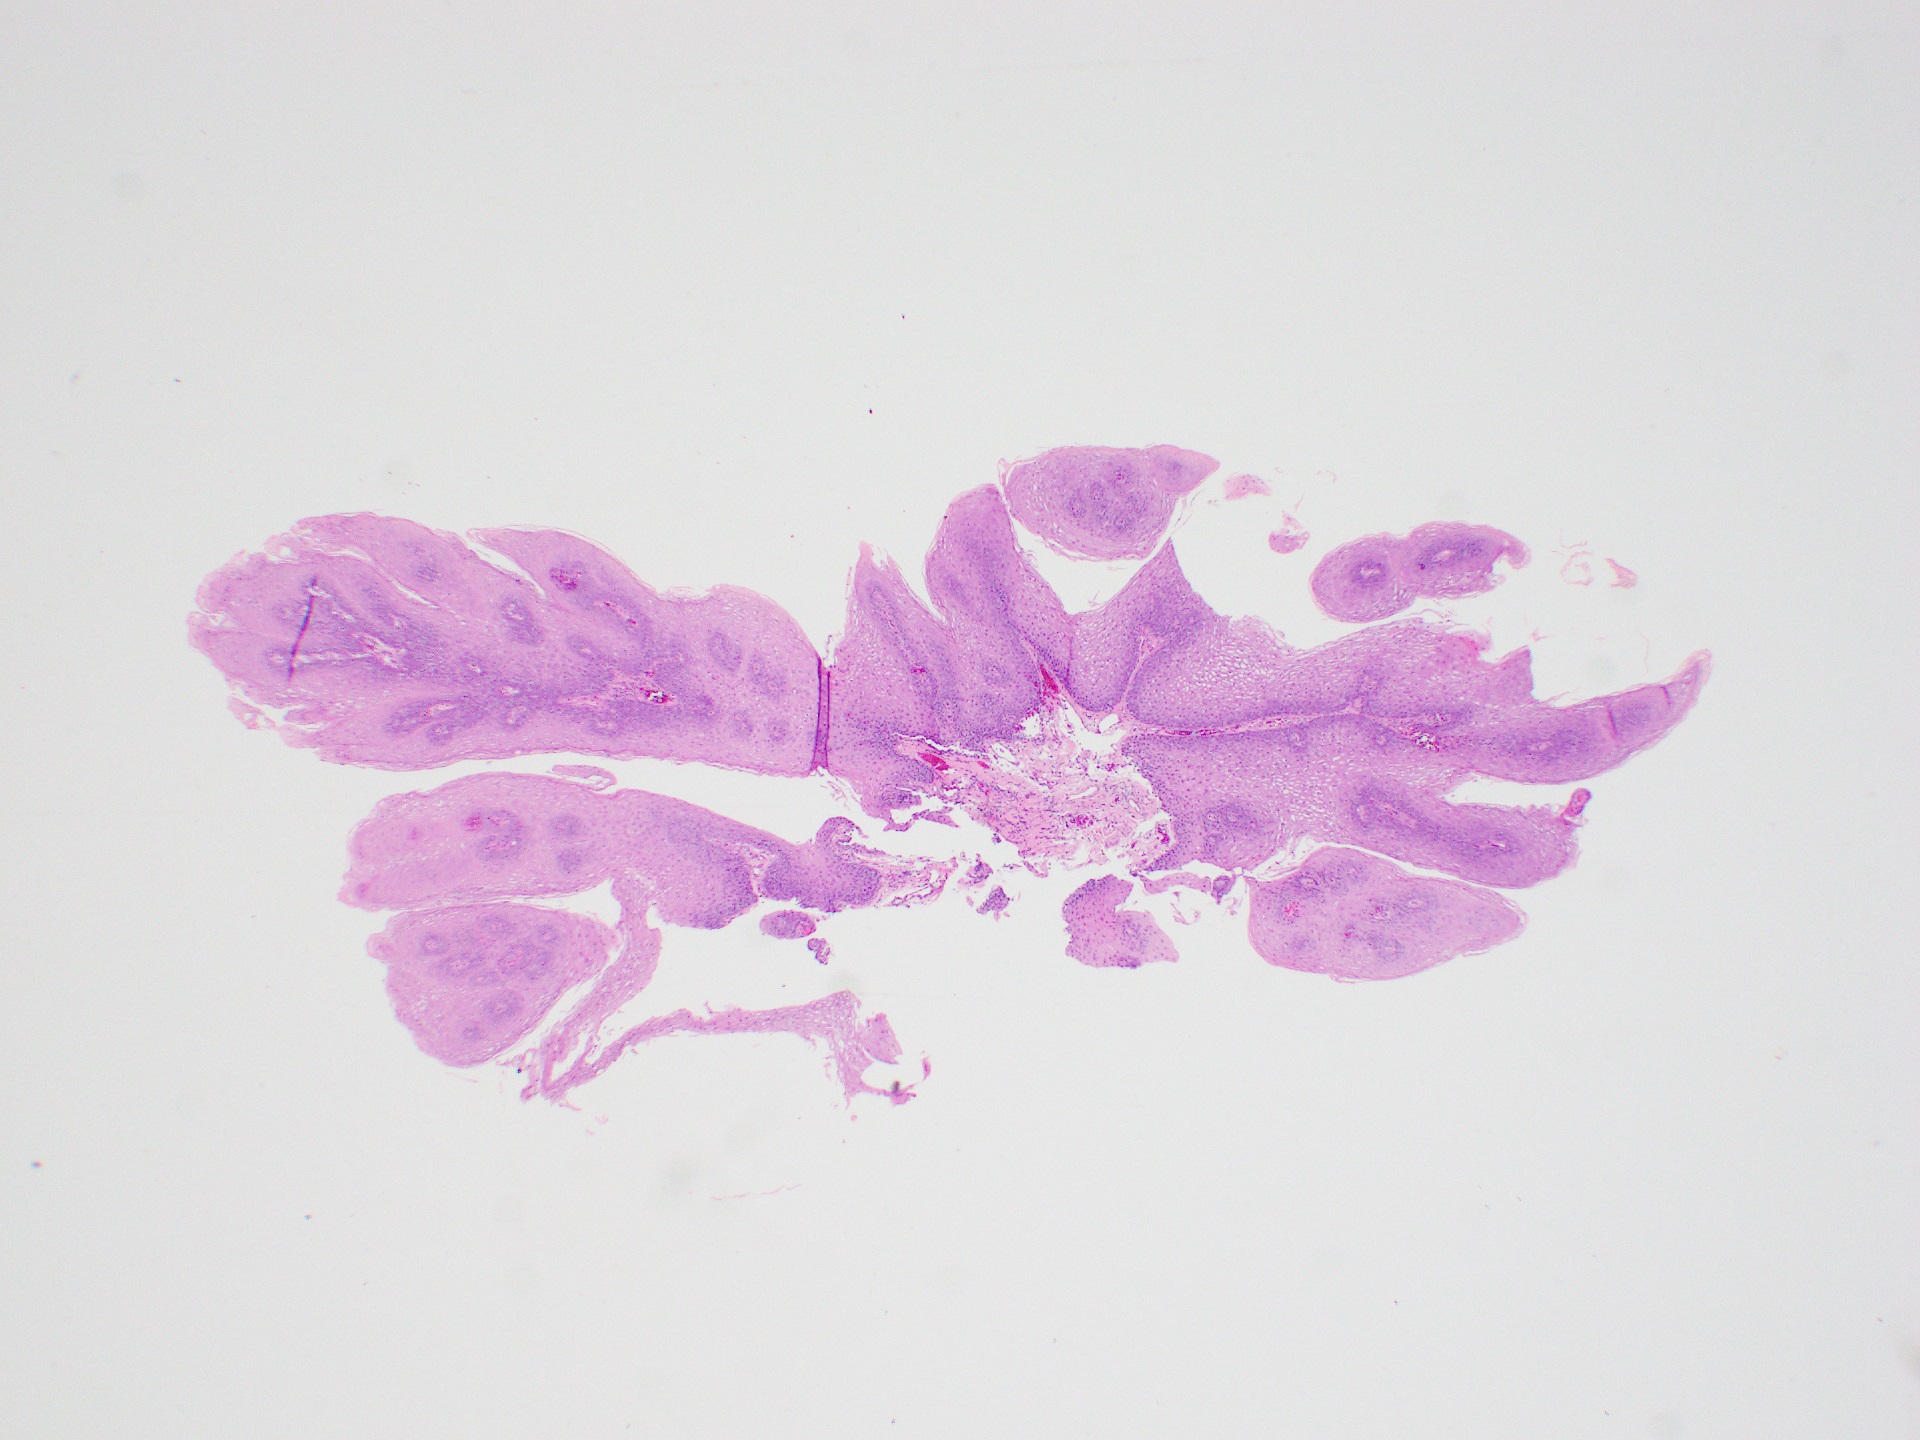 esophageal papilloma pathology outlines